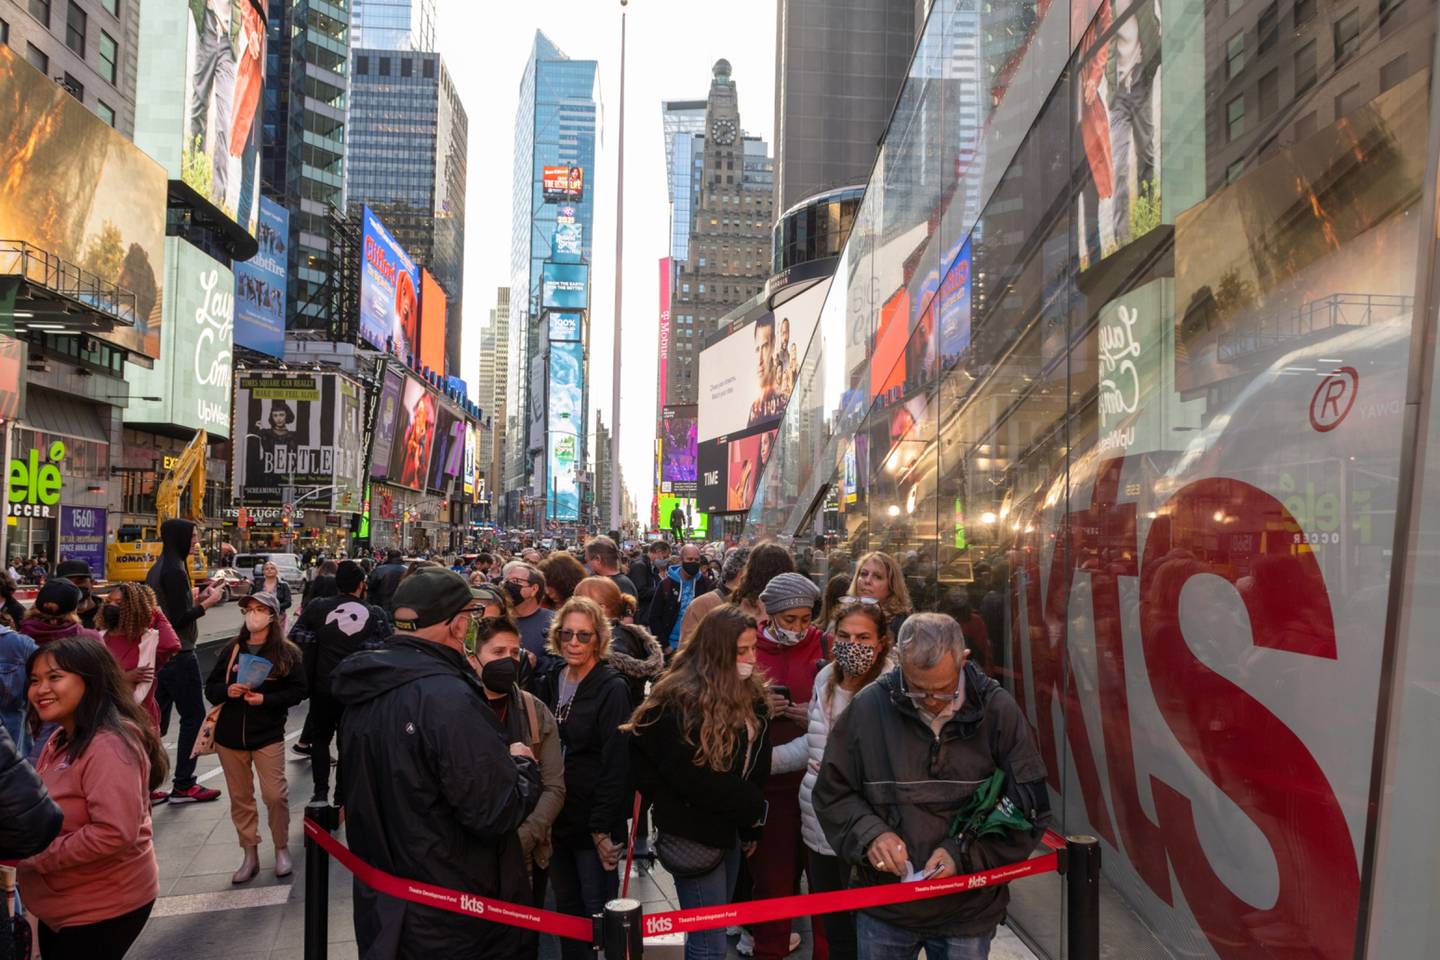 Turistas esperan en fila para comprar boletos para los espectáculos de Broadway en Times Square.